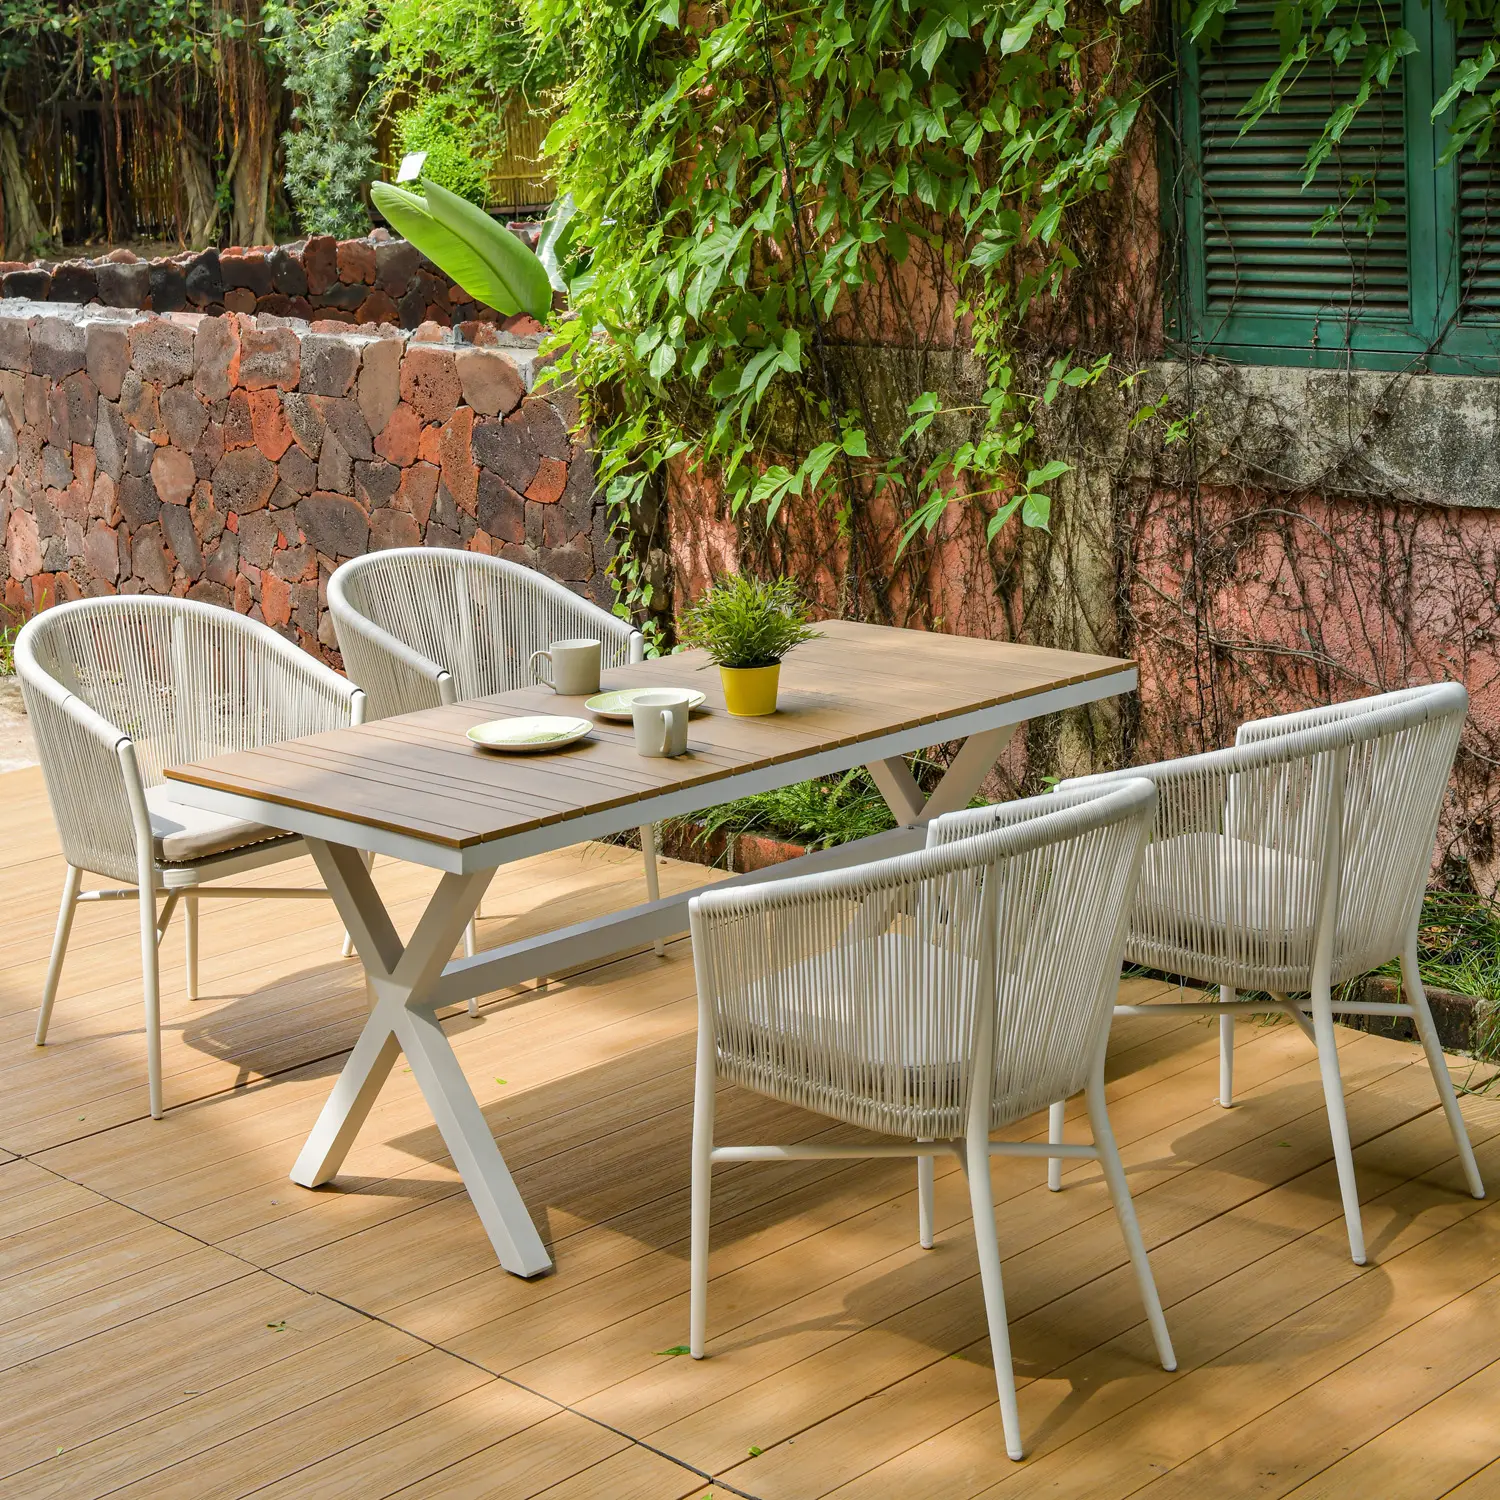 160cm Garten im Freien Esszimmer Aluminium Kunststoff Holz Rechteck langen Tisch setzt Seil Rattan Stuhl